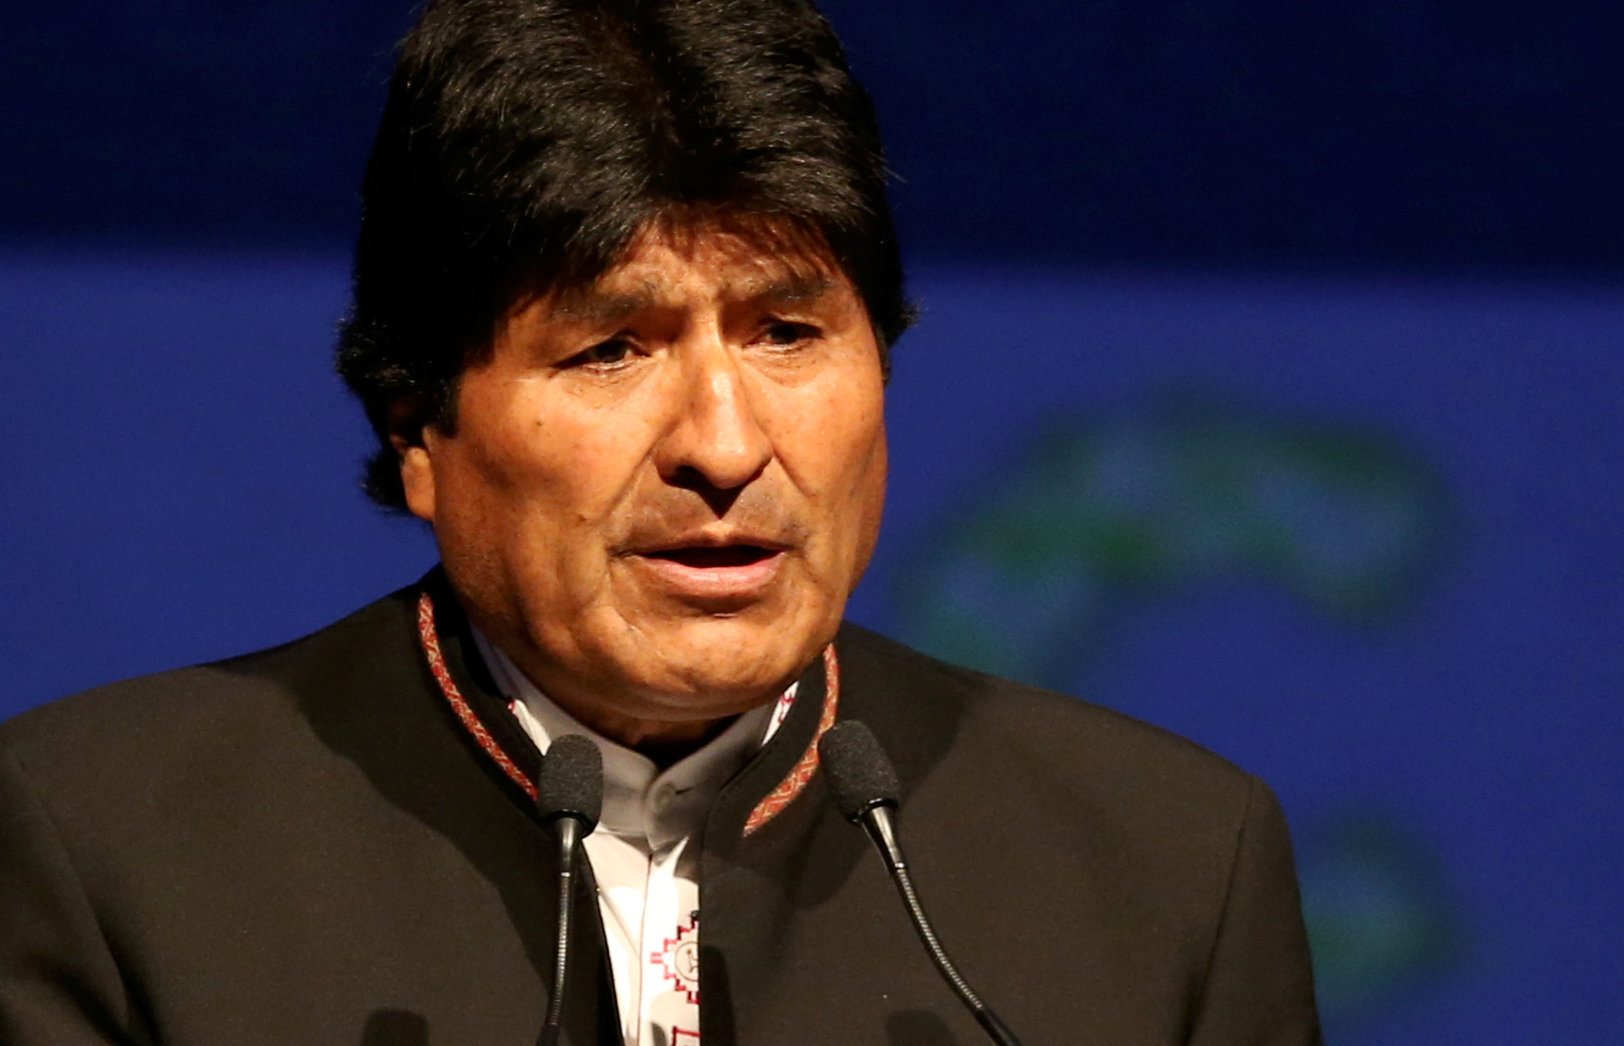 Evo Morales dice que Ecuador da la espalda a integración al retirarse de ALBA